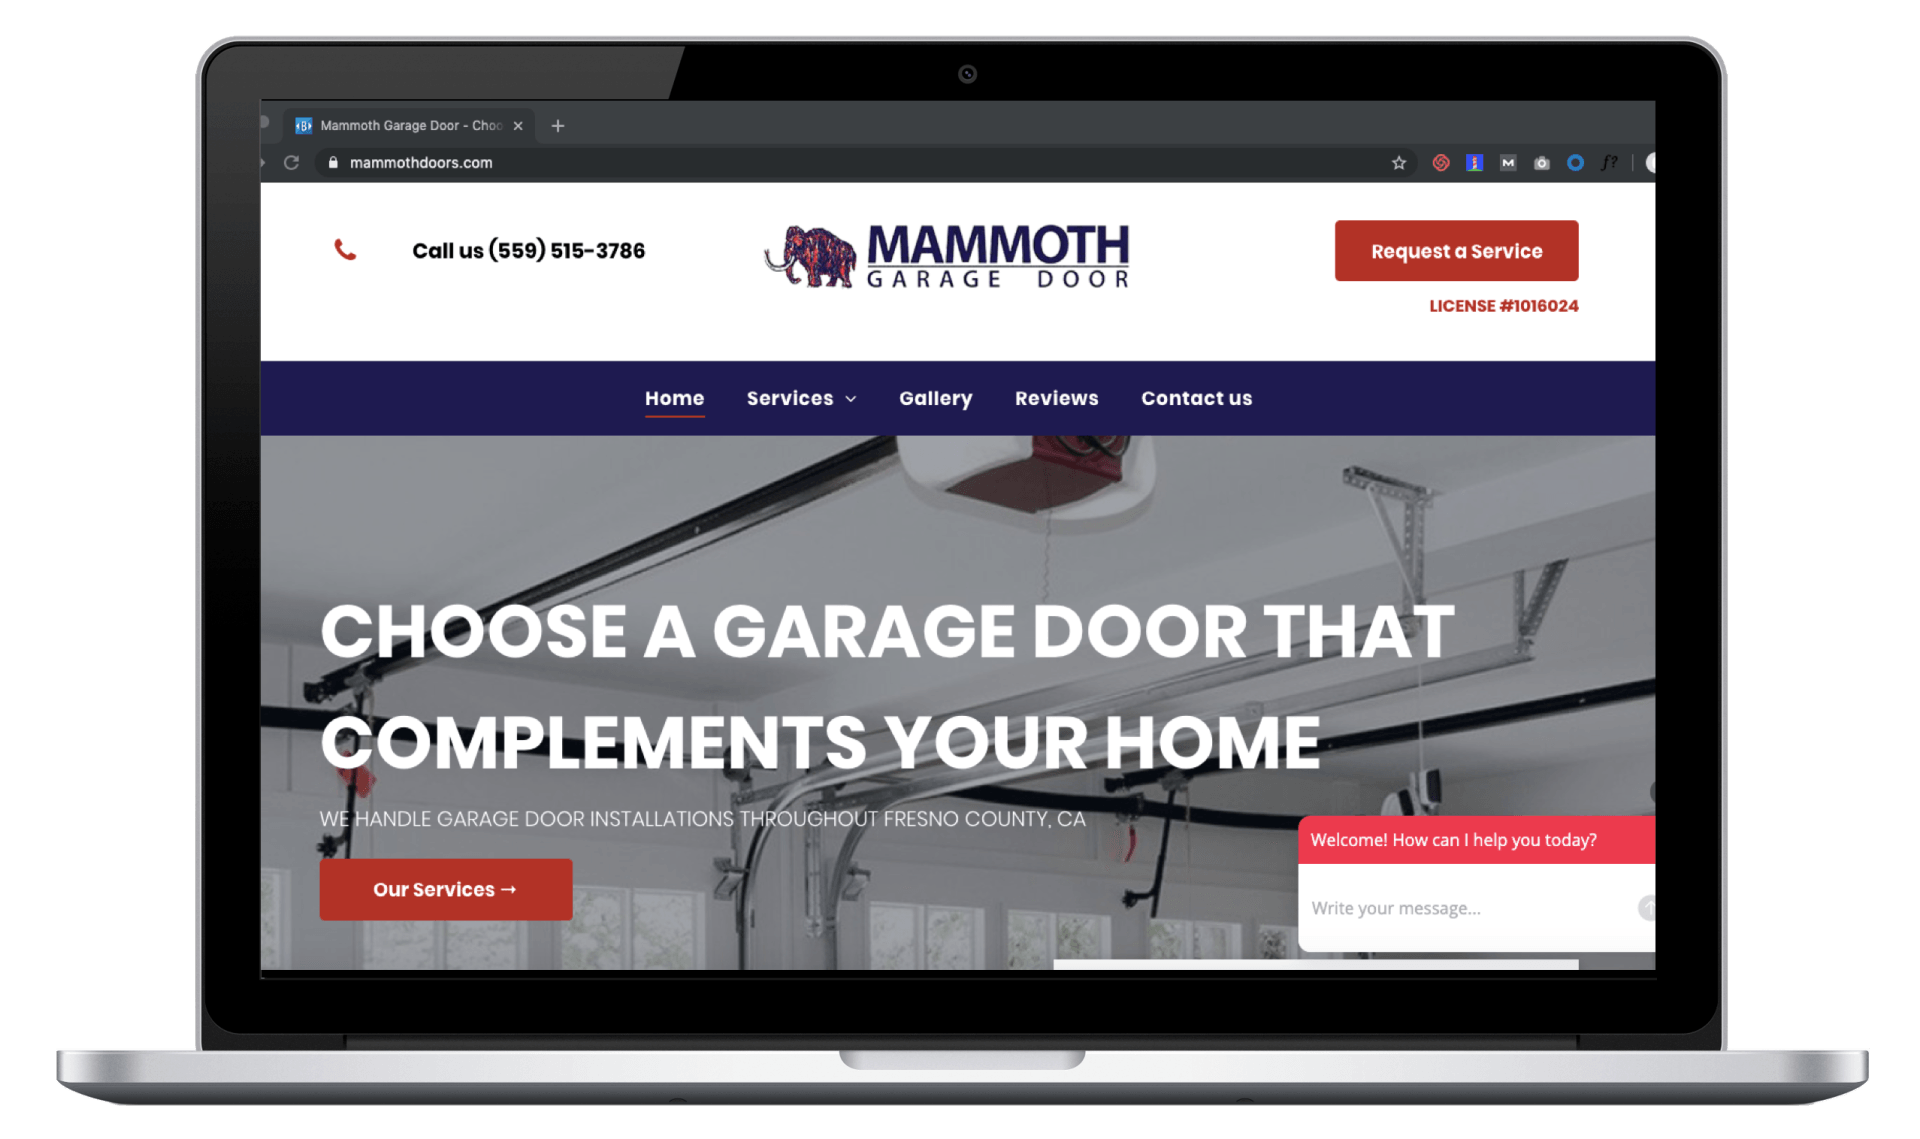 Mammoth Garage Door